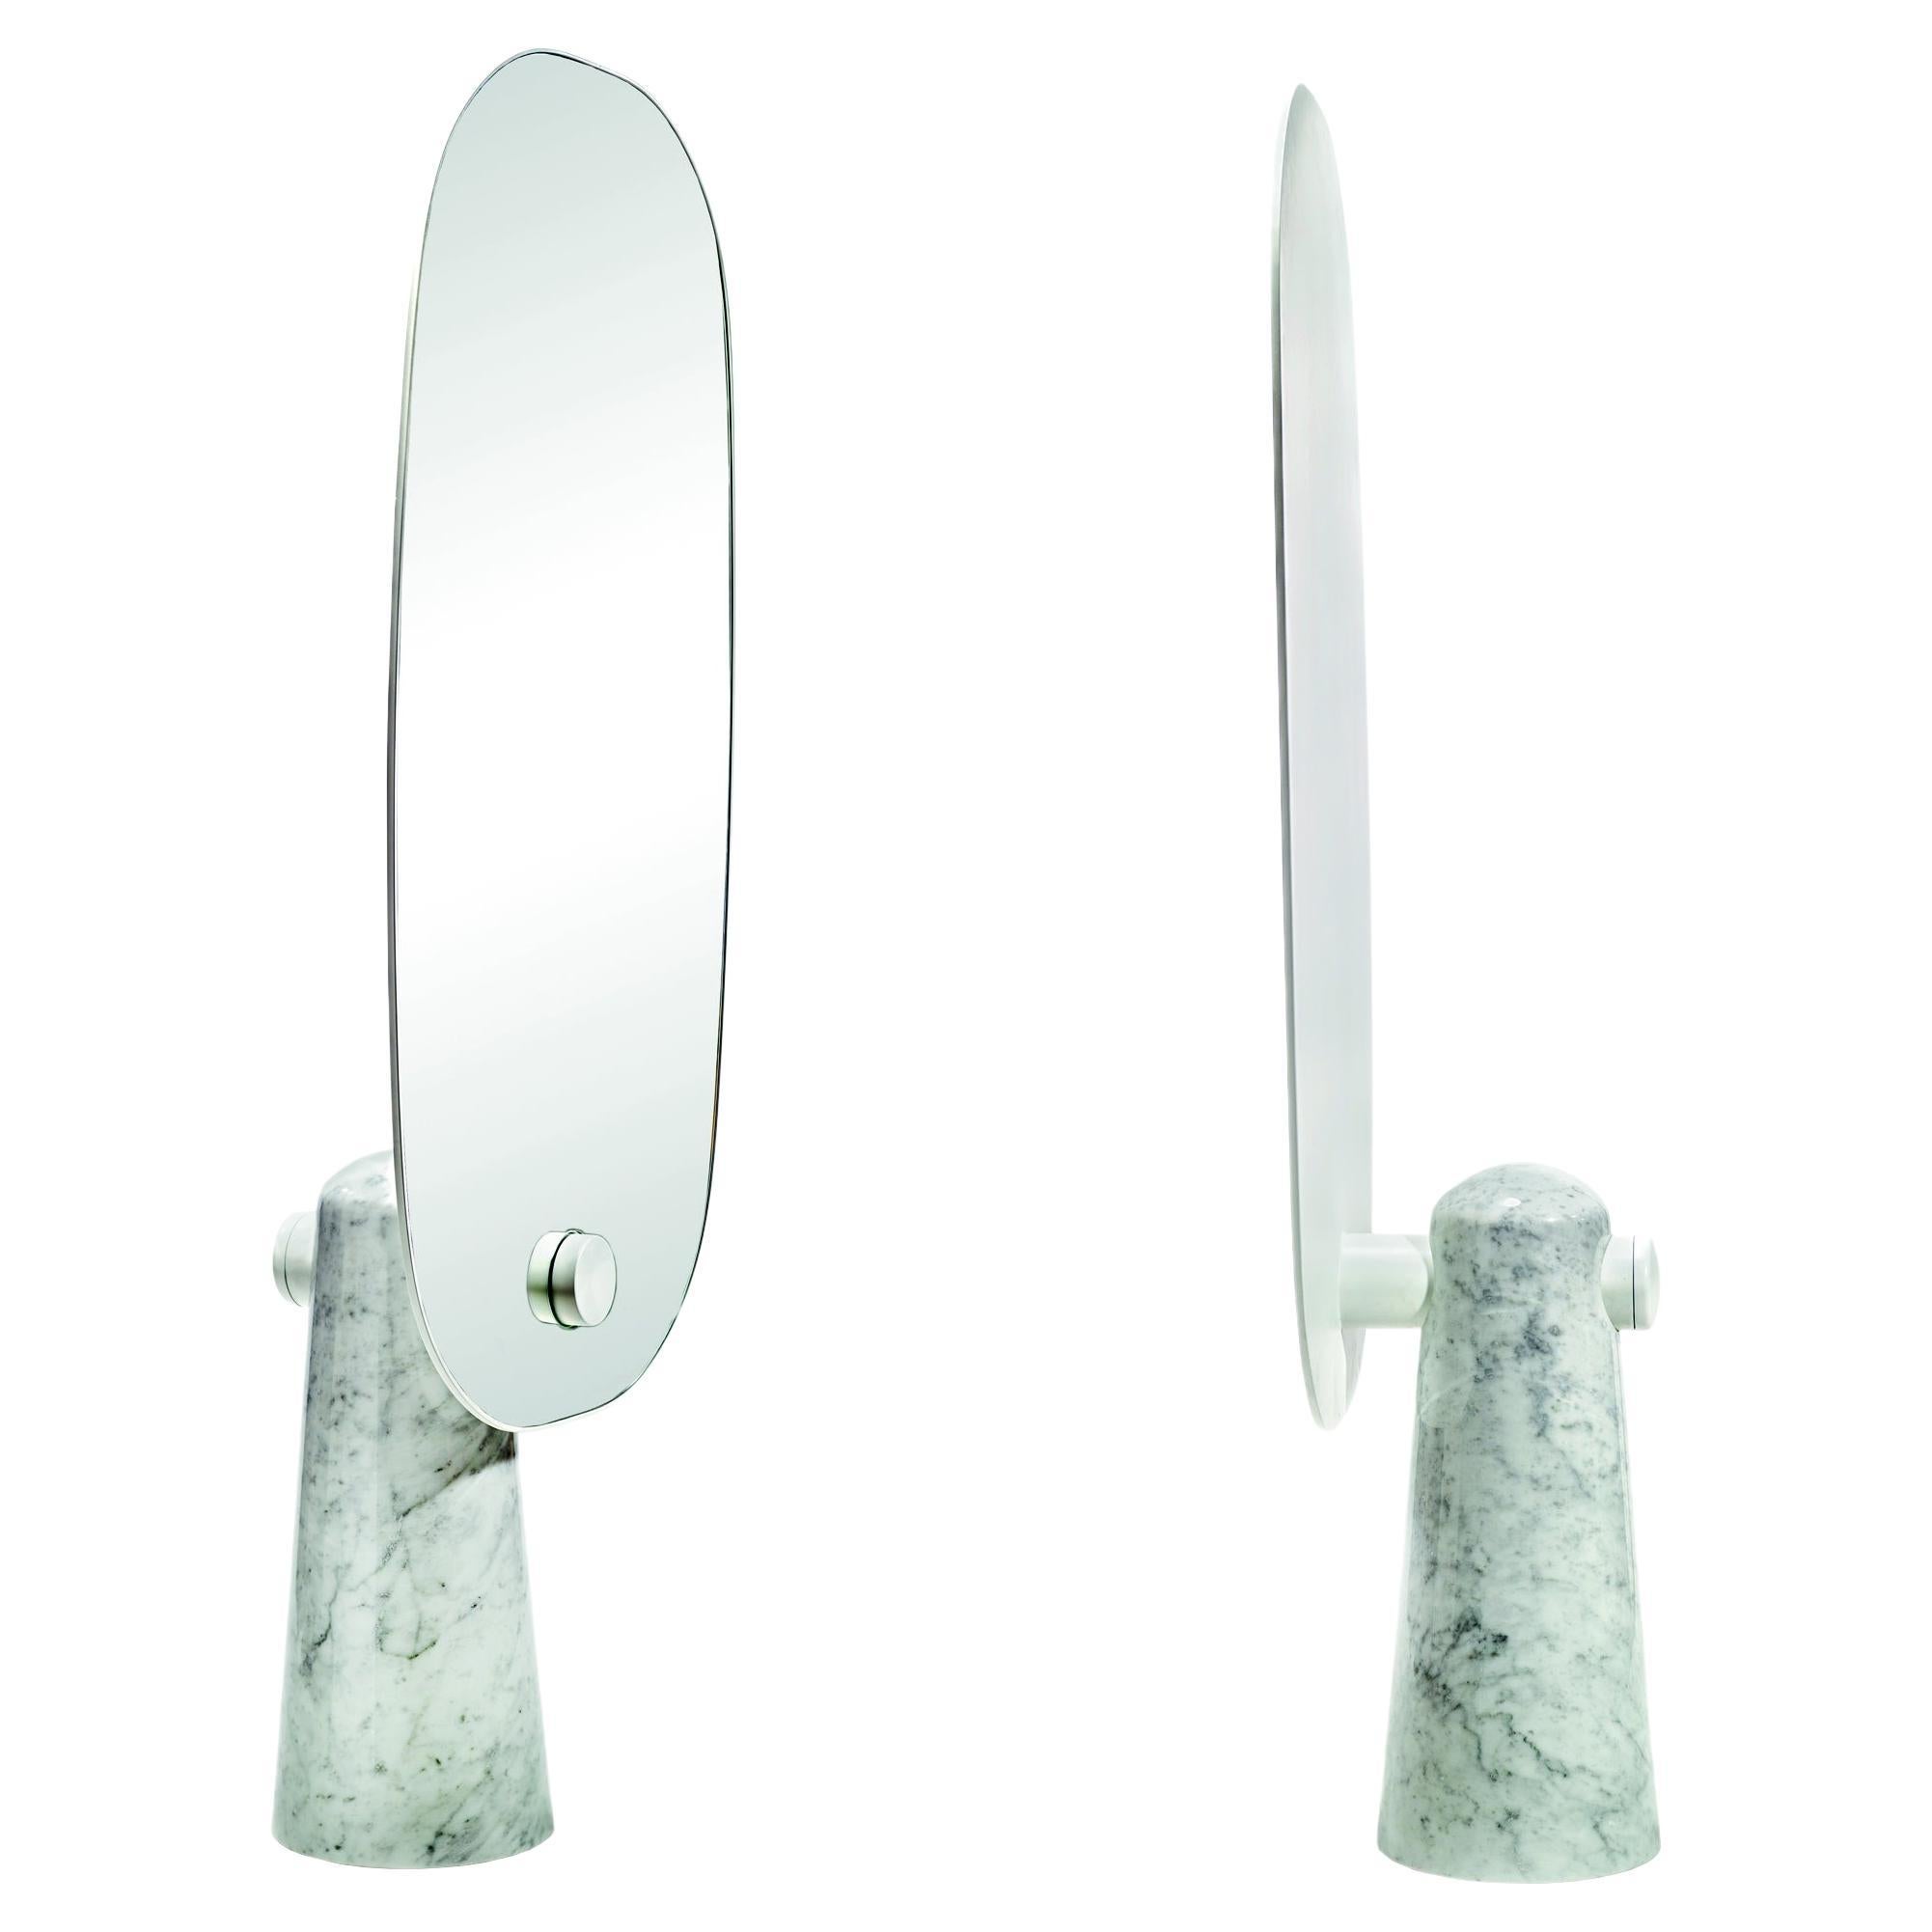 Weißer ikonischer Spiegel in Weiß von Dan Yeffet und Lucie Koldova für La Chance